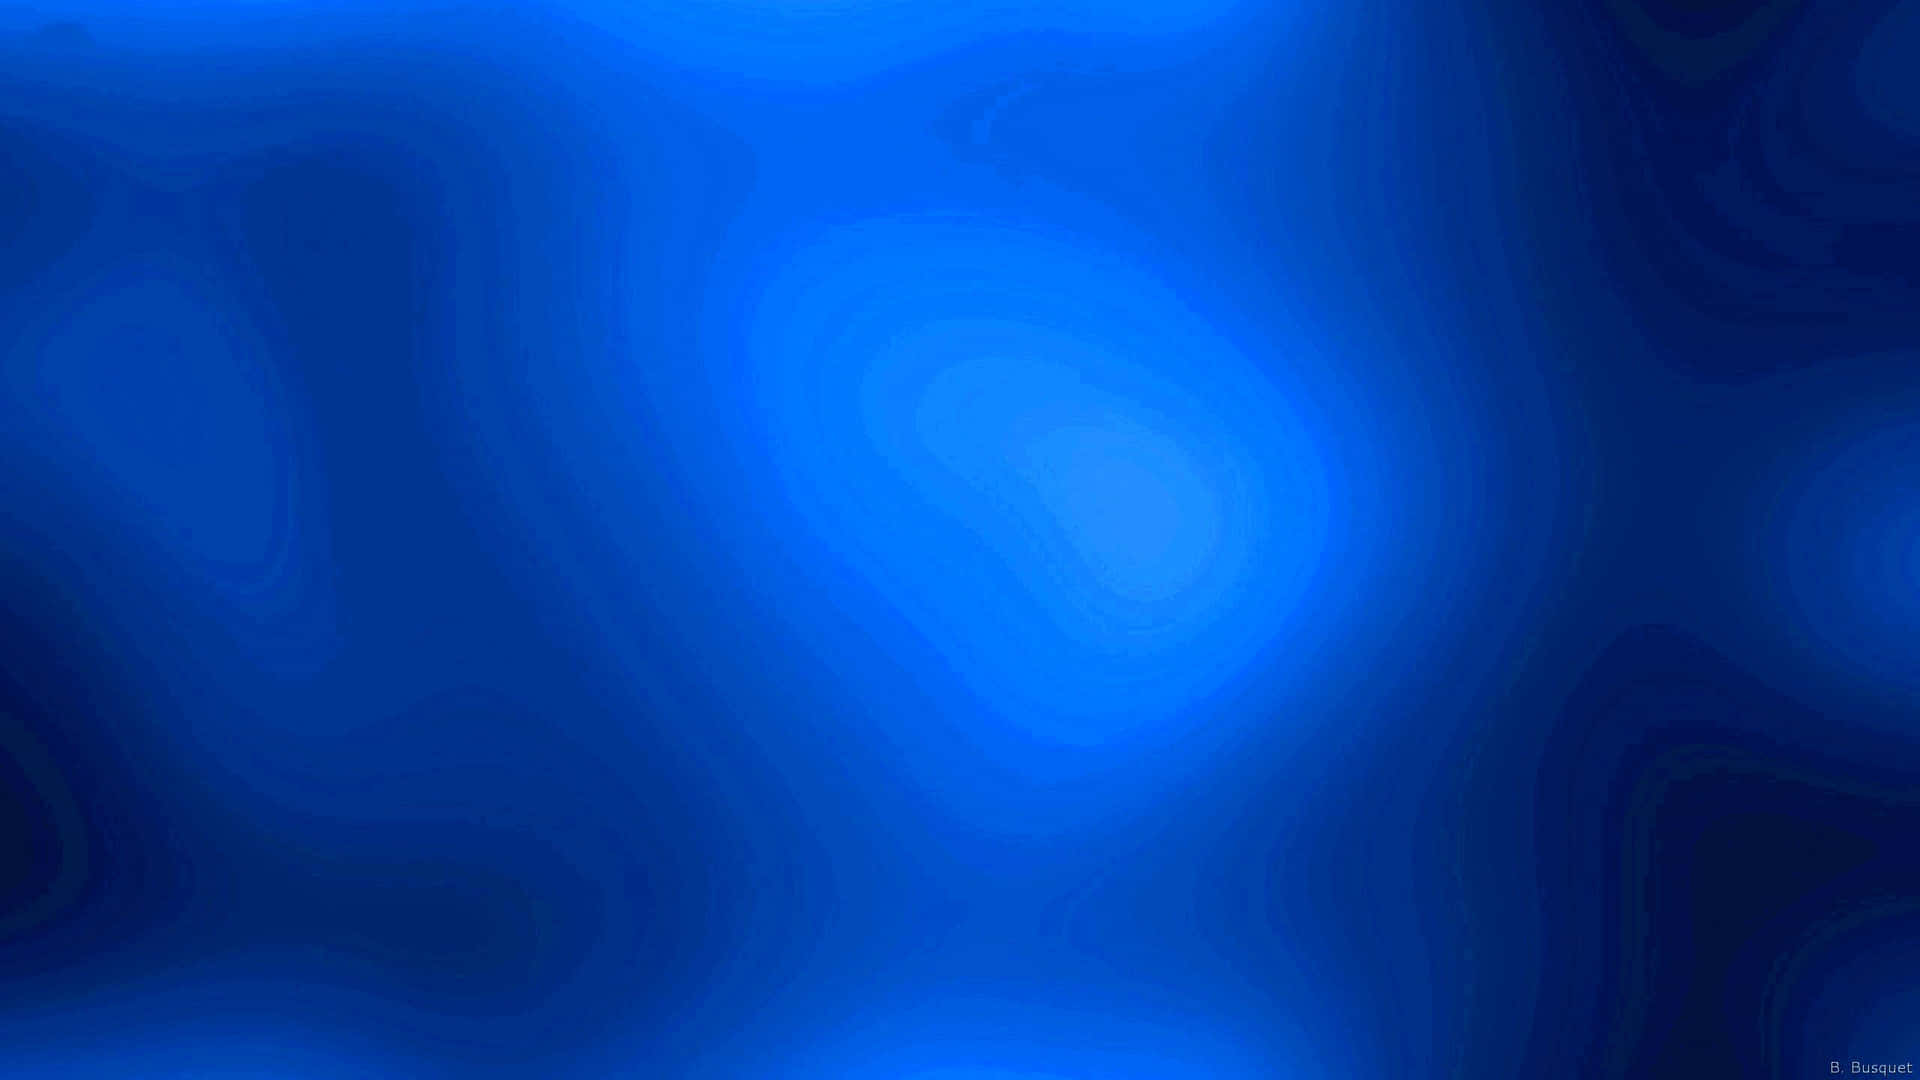 Blurred Cobalt Blue Gradient Background